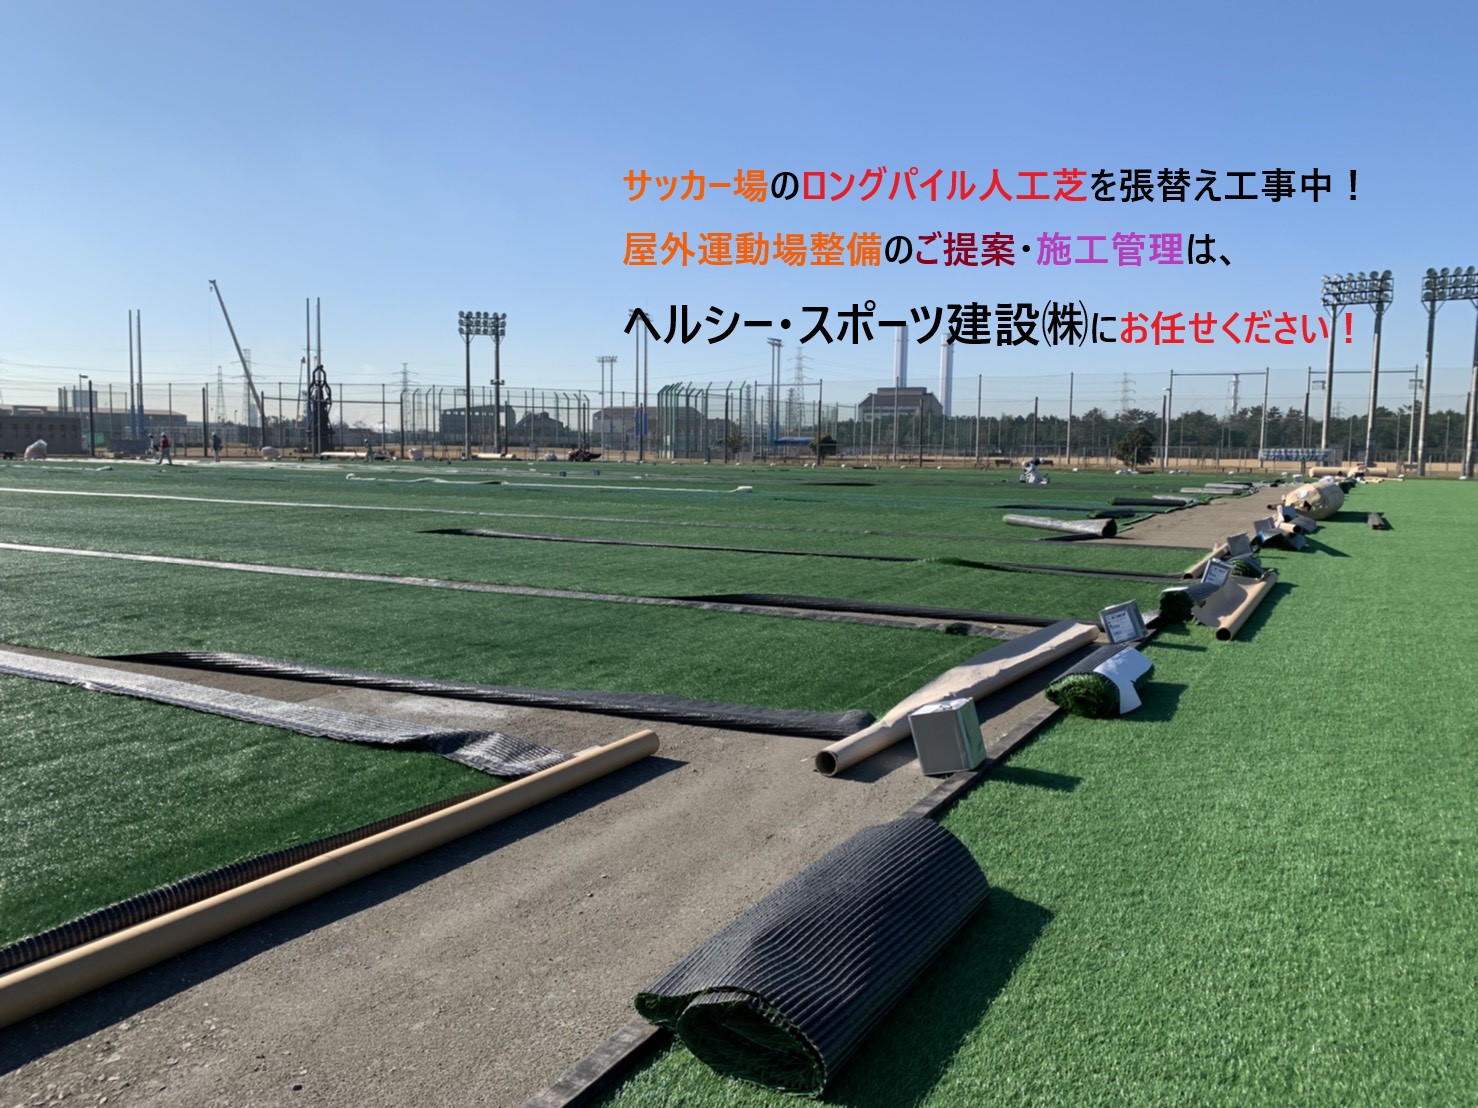 サッカー場のロングパイル人工芝張替え工事中の動画です ヘルシー スポーツ建設株式会社